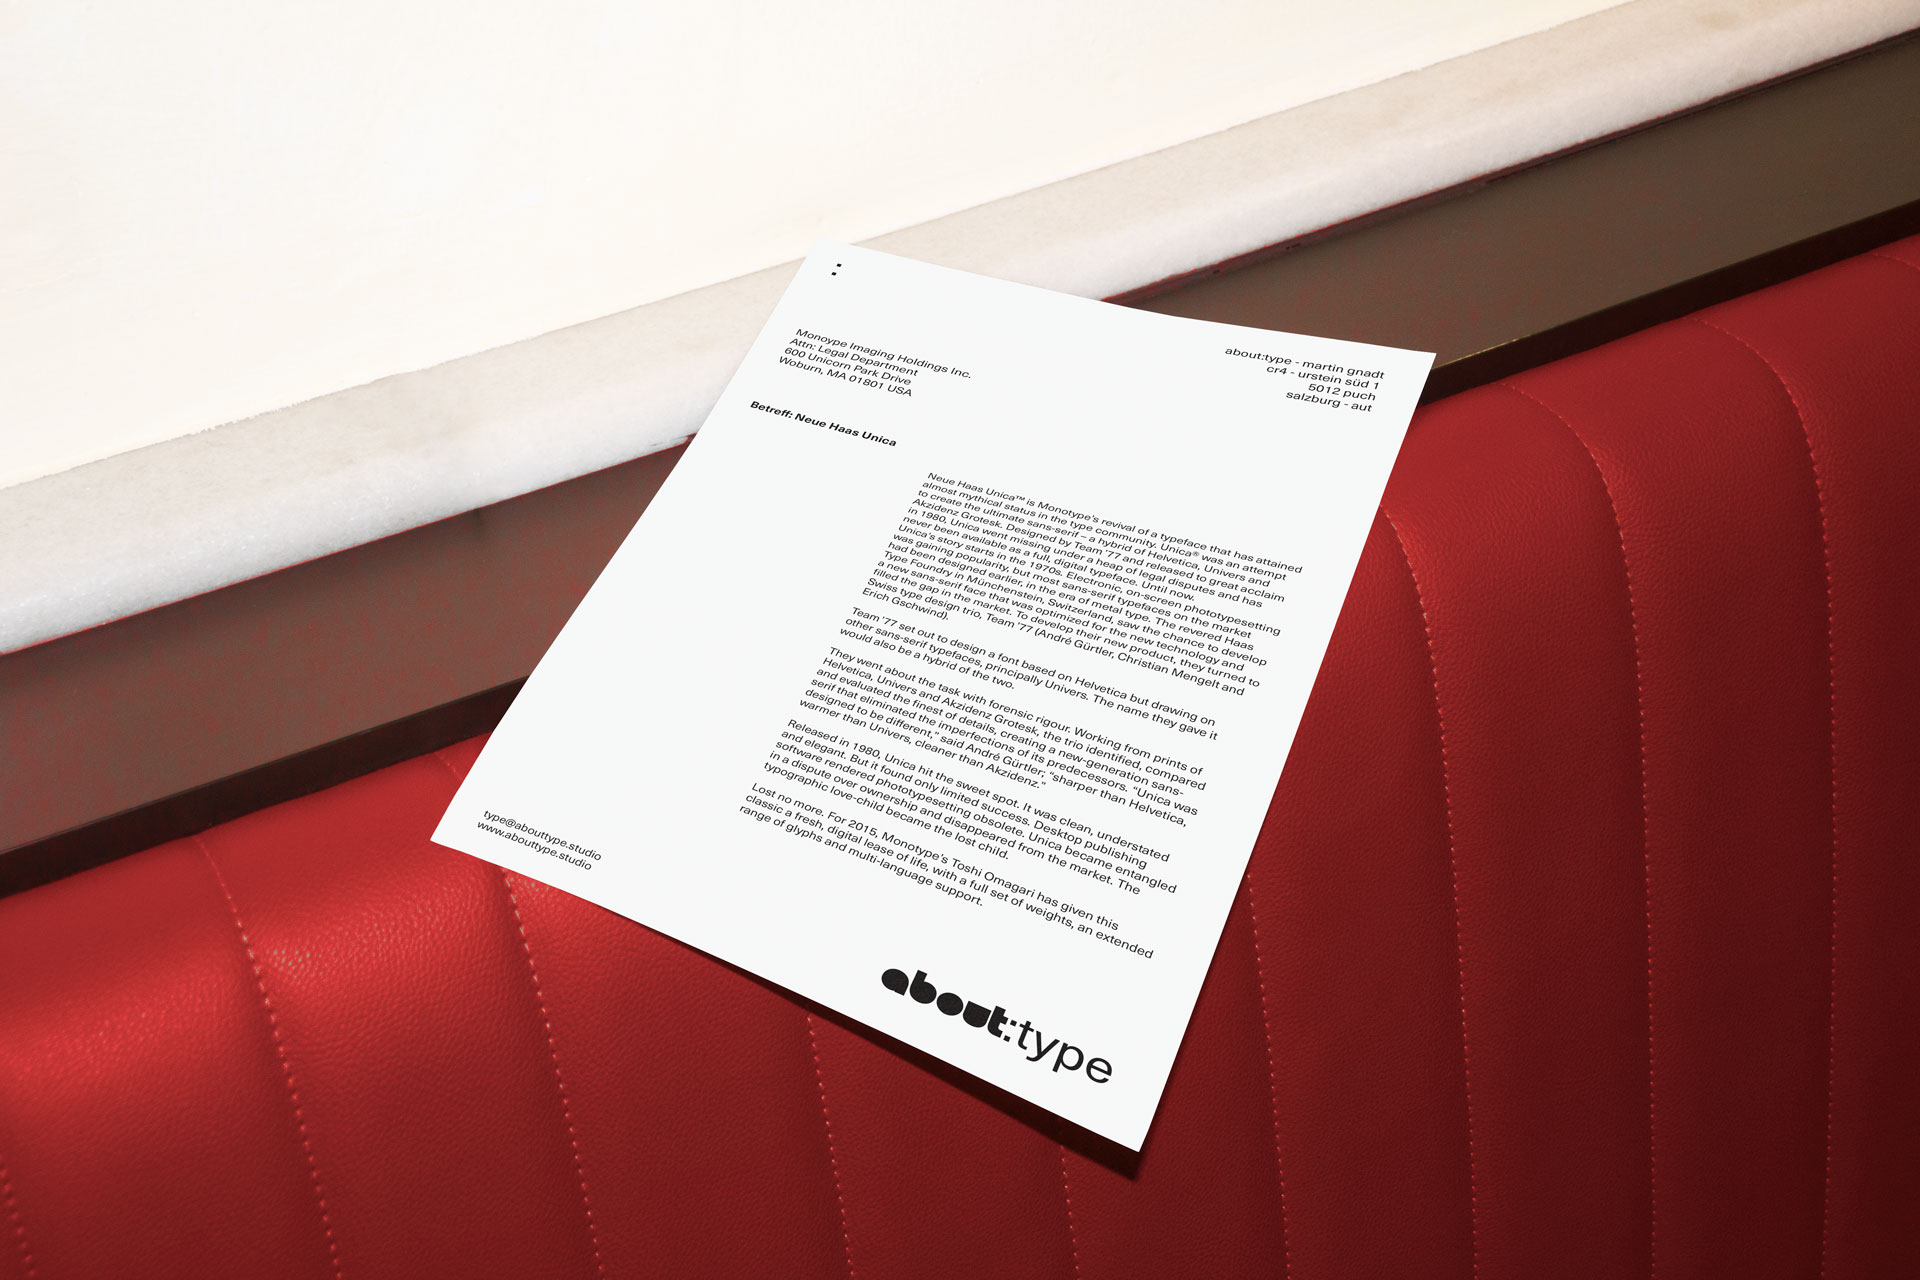 Briefpapierentwurf für den Typoclub Salzburg auf einer roten Polsterung